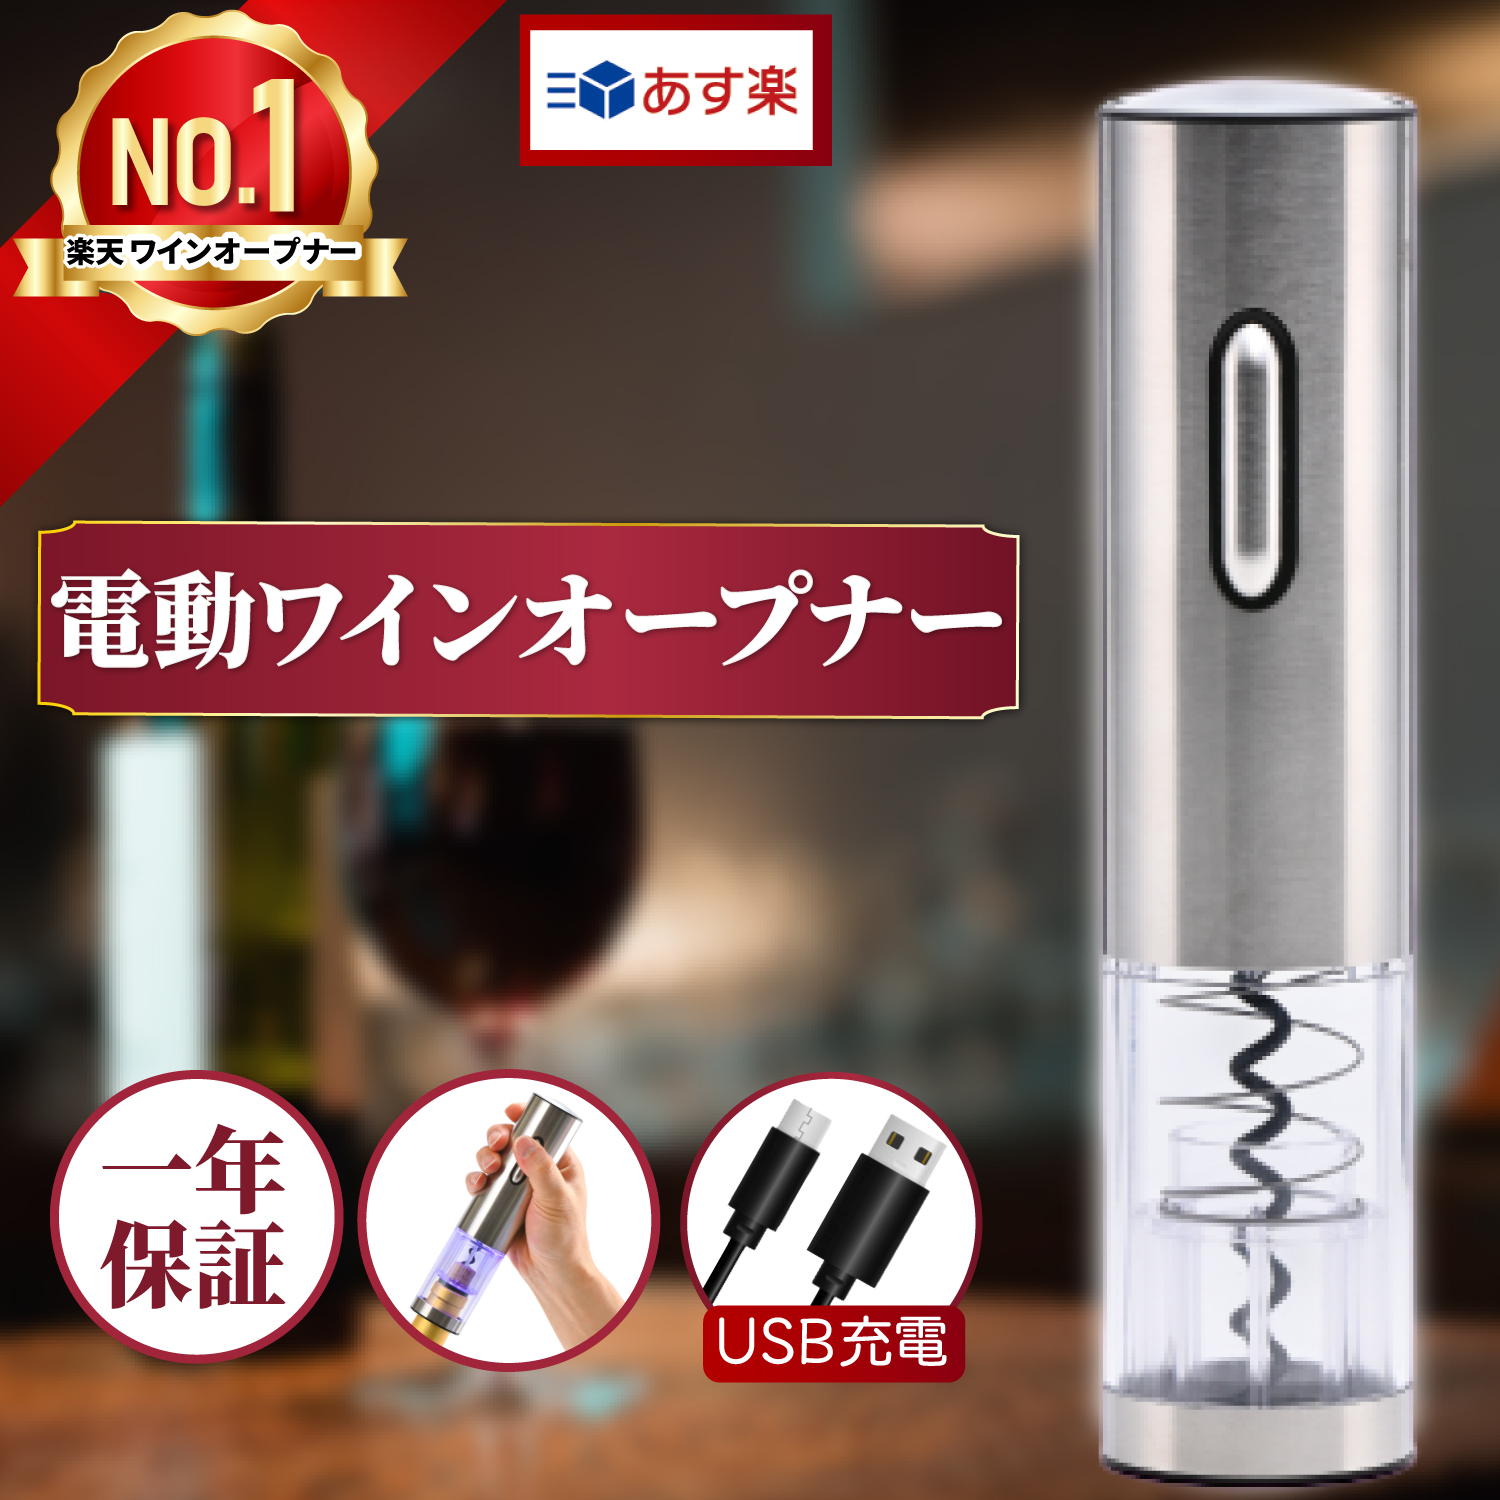 ランキング1位 ワインオープナー 正規品 電動 簡単 USB充電式 あす楽 最安値に挑戦 コルク抜き 電動ワインオープナー 栓抜き